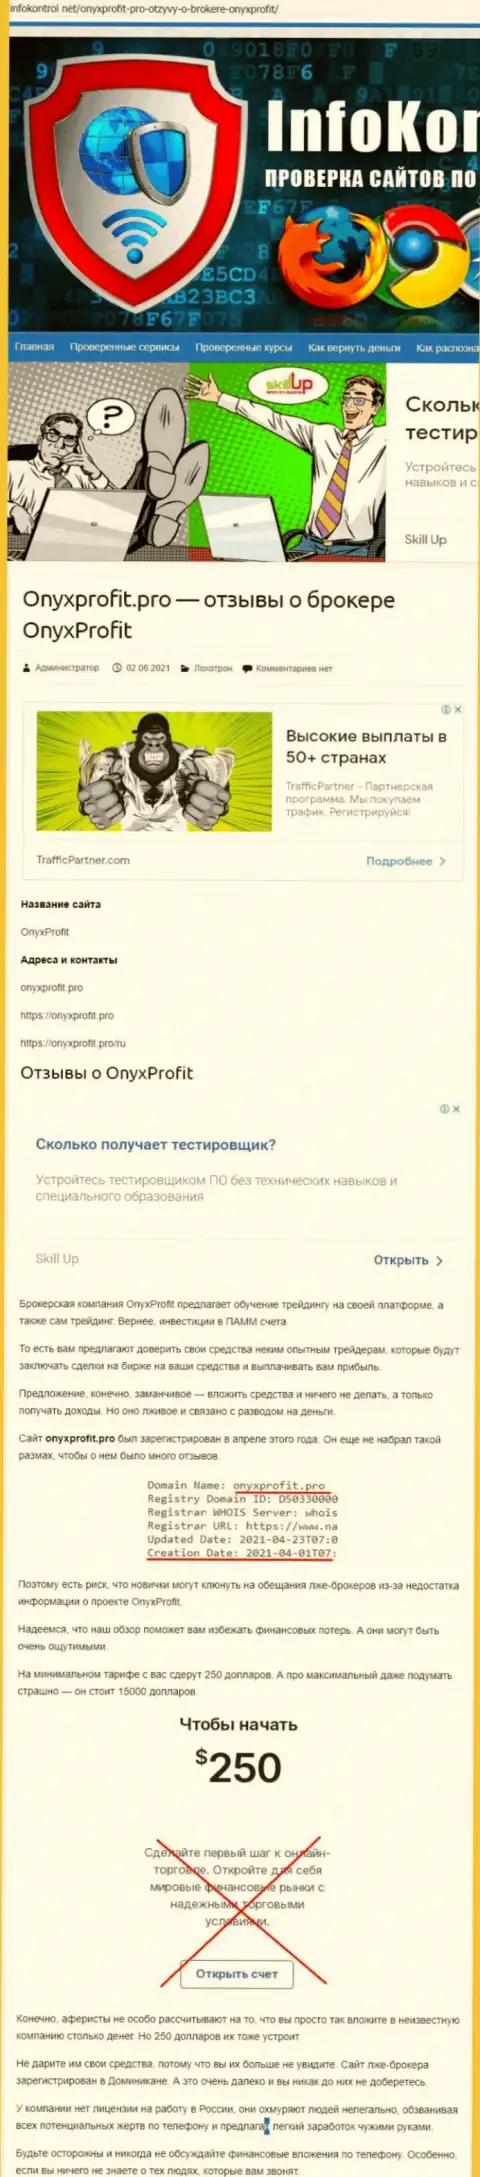 OnyxProfit Pro - разводняк, на который вестись не стоит (обзор деятельности конторы)